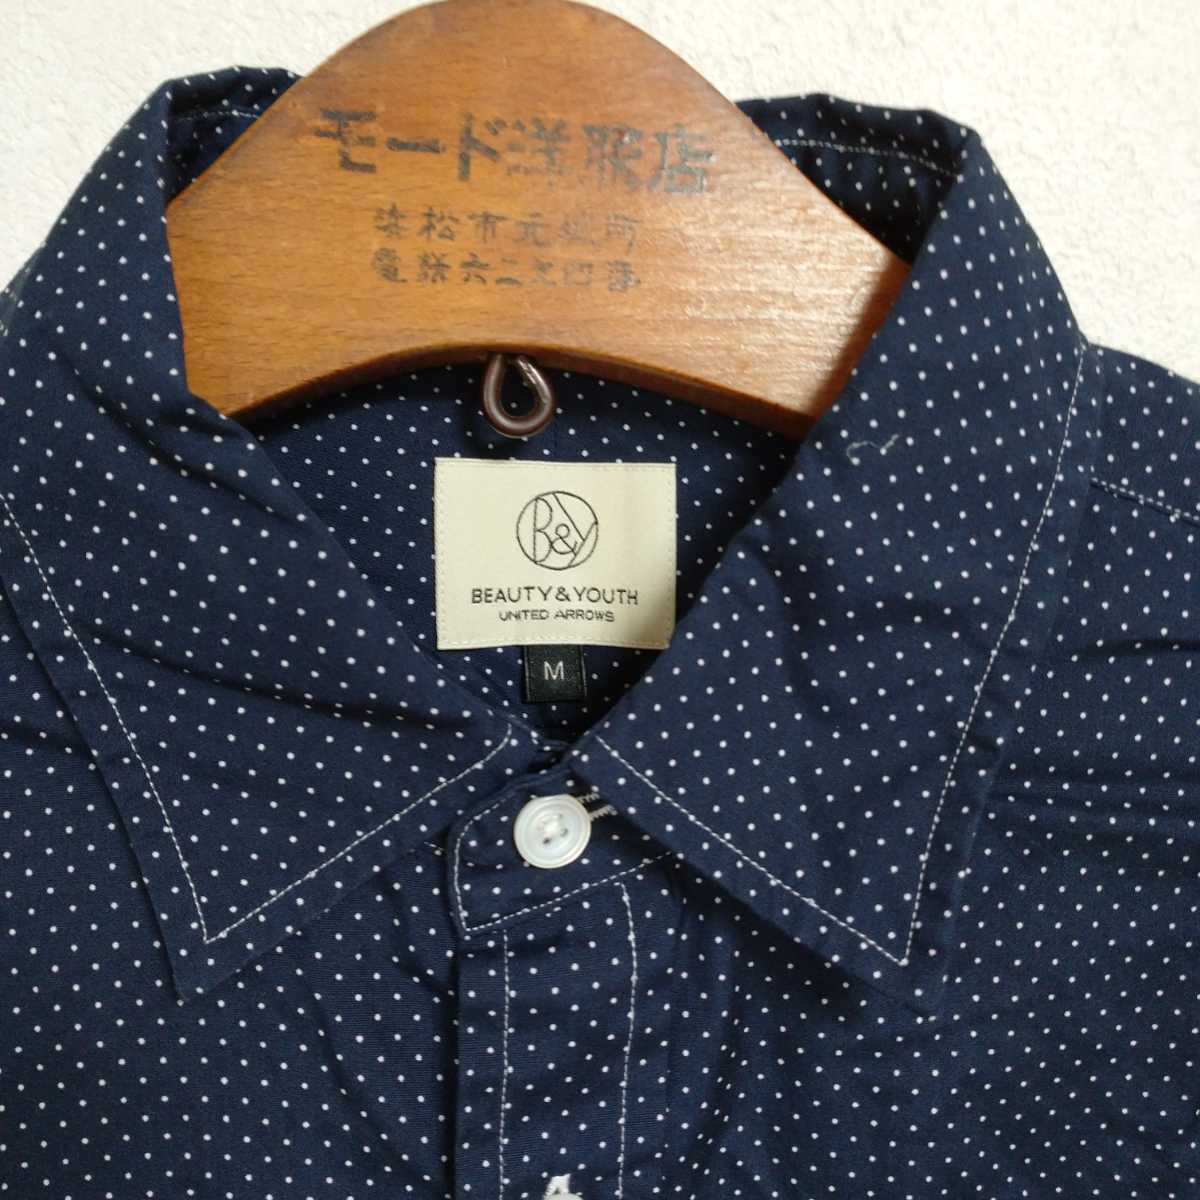 日本製 ユナイテッドアローズ マチ 水玉 ドレスシャツ 紺 M